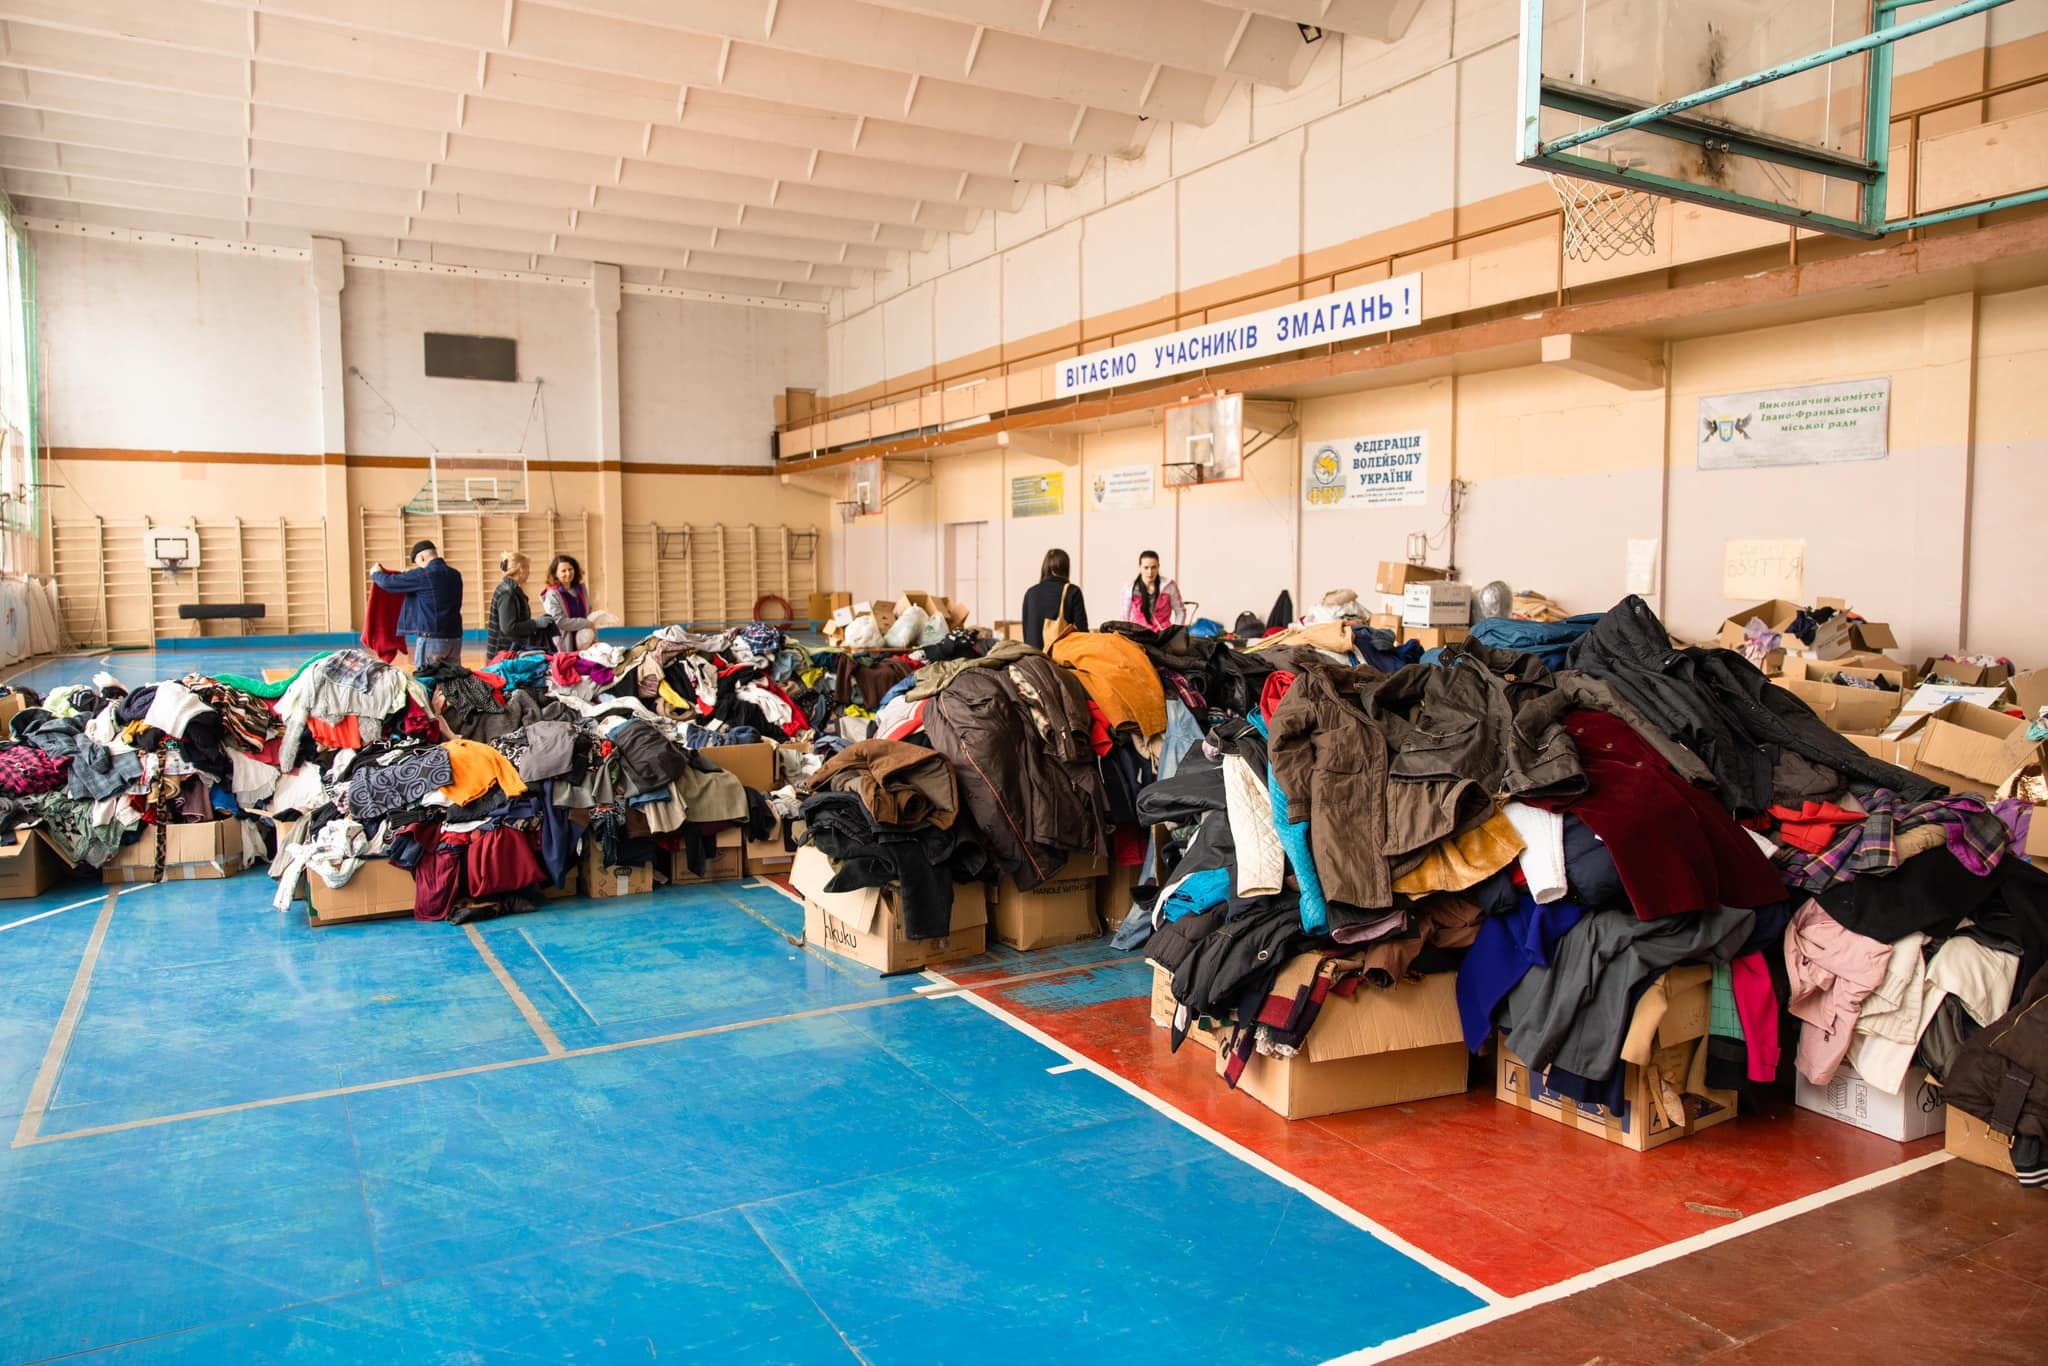 В університеті нафти і газу зібрали багато одягу для вимушених переселенців – запрошують всіх потребуючих (ФОТО)